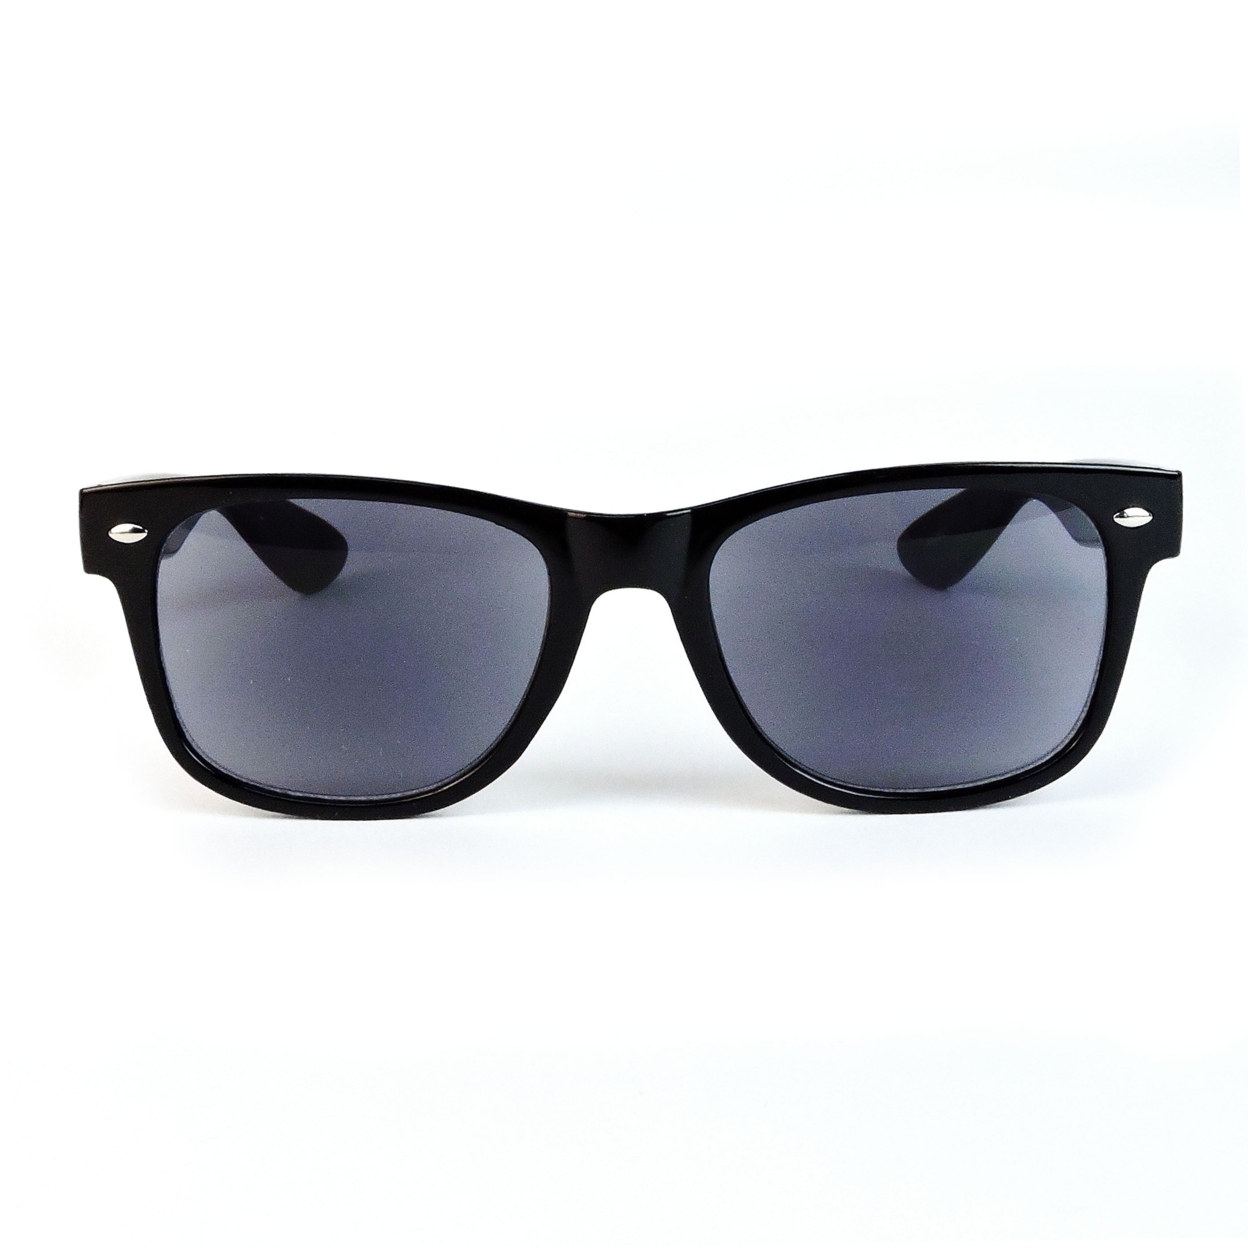 Sun Readers Full Lens Classic Frame 80's Retro Style Reading Sunglasses - Tortoise, +2.50